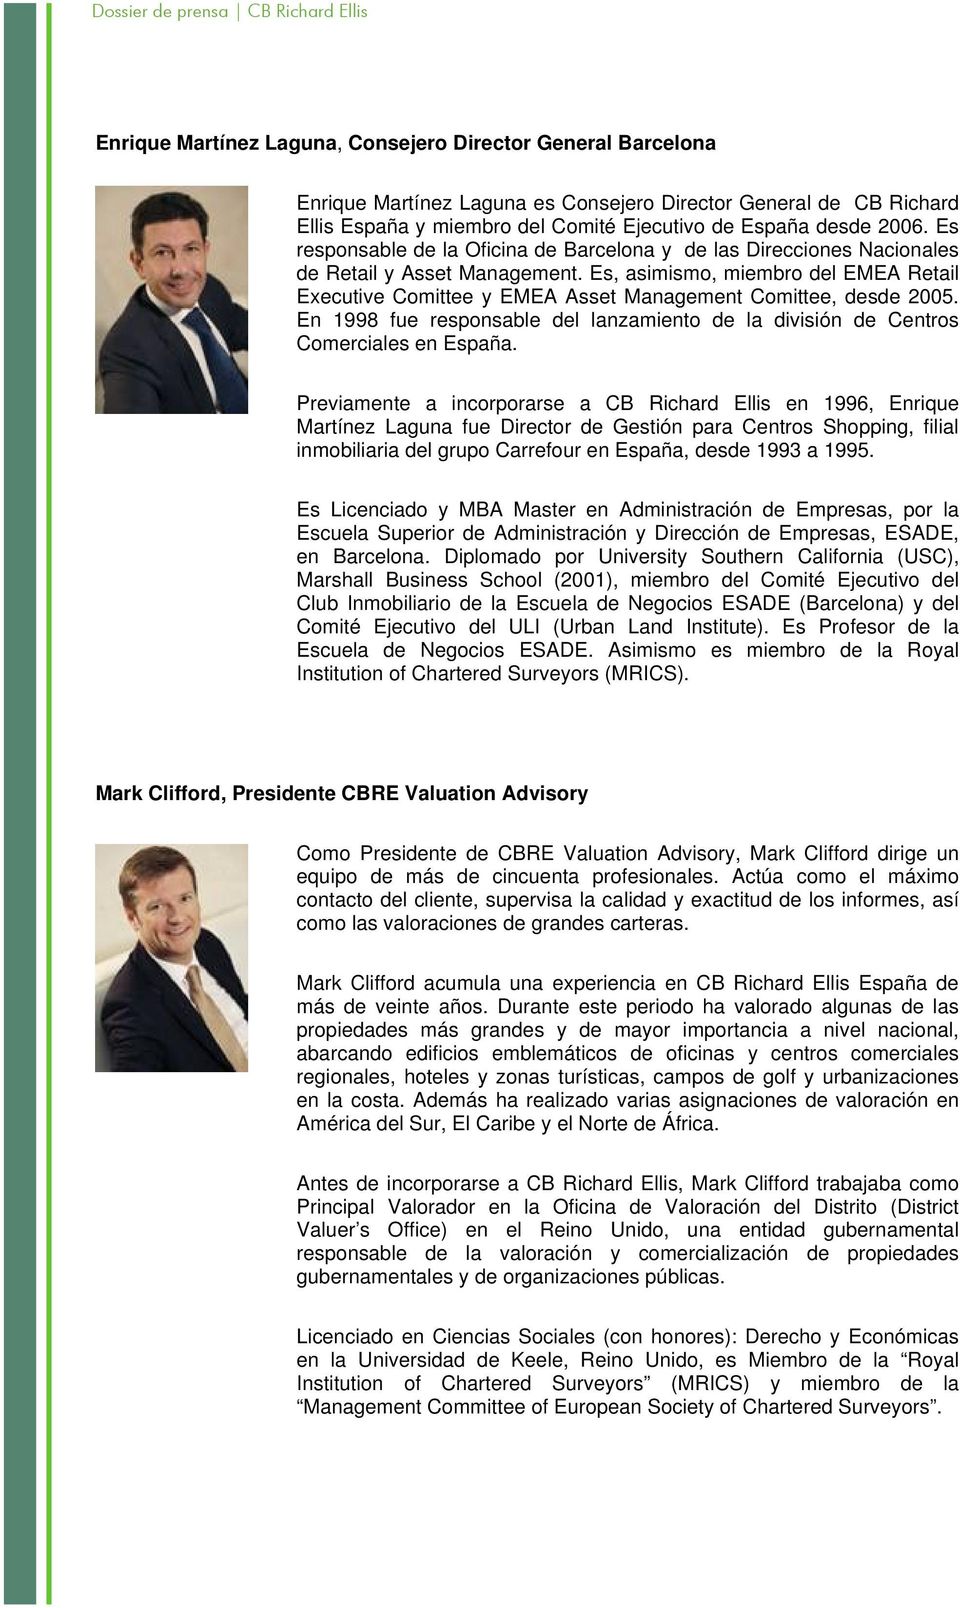 Es, asimismo, miembro del EMEA Retail Executive Comittee y EMEA Asset Management Comittee, desde 2005. En 1998 fue responsable del lanzamiento de la división de Centros Comerciales en España.